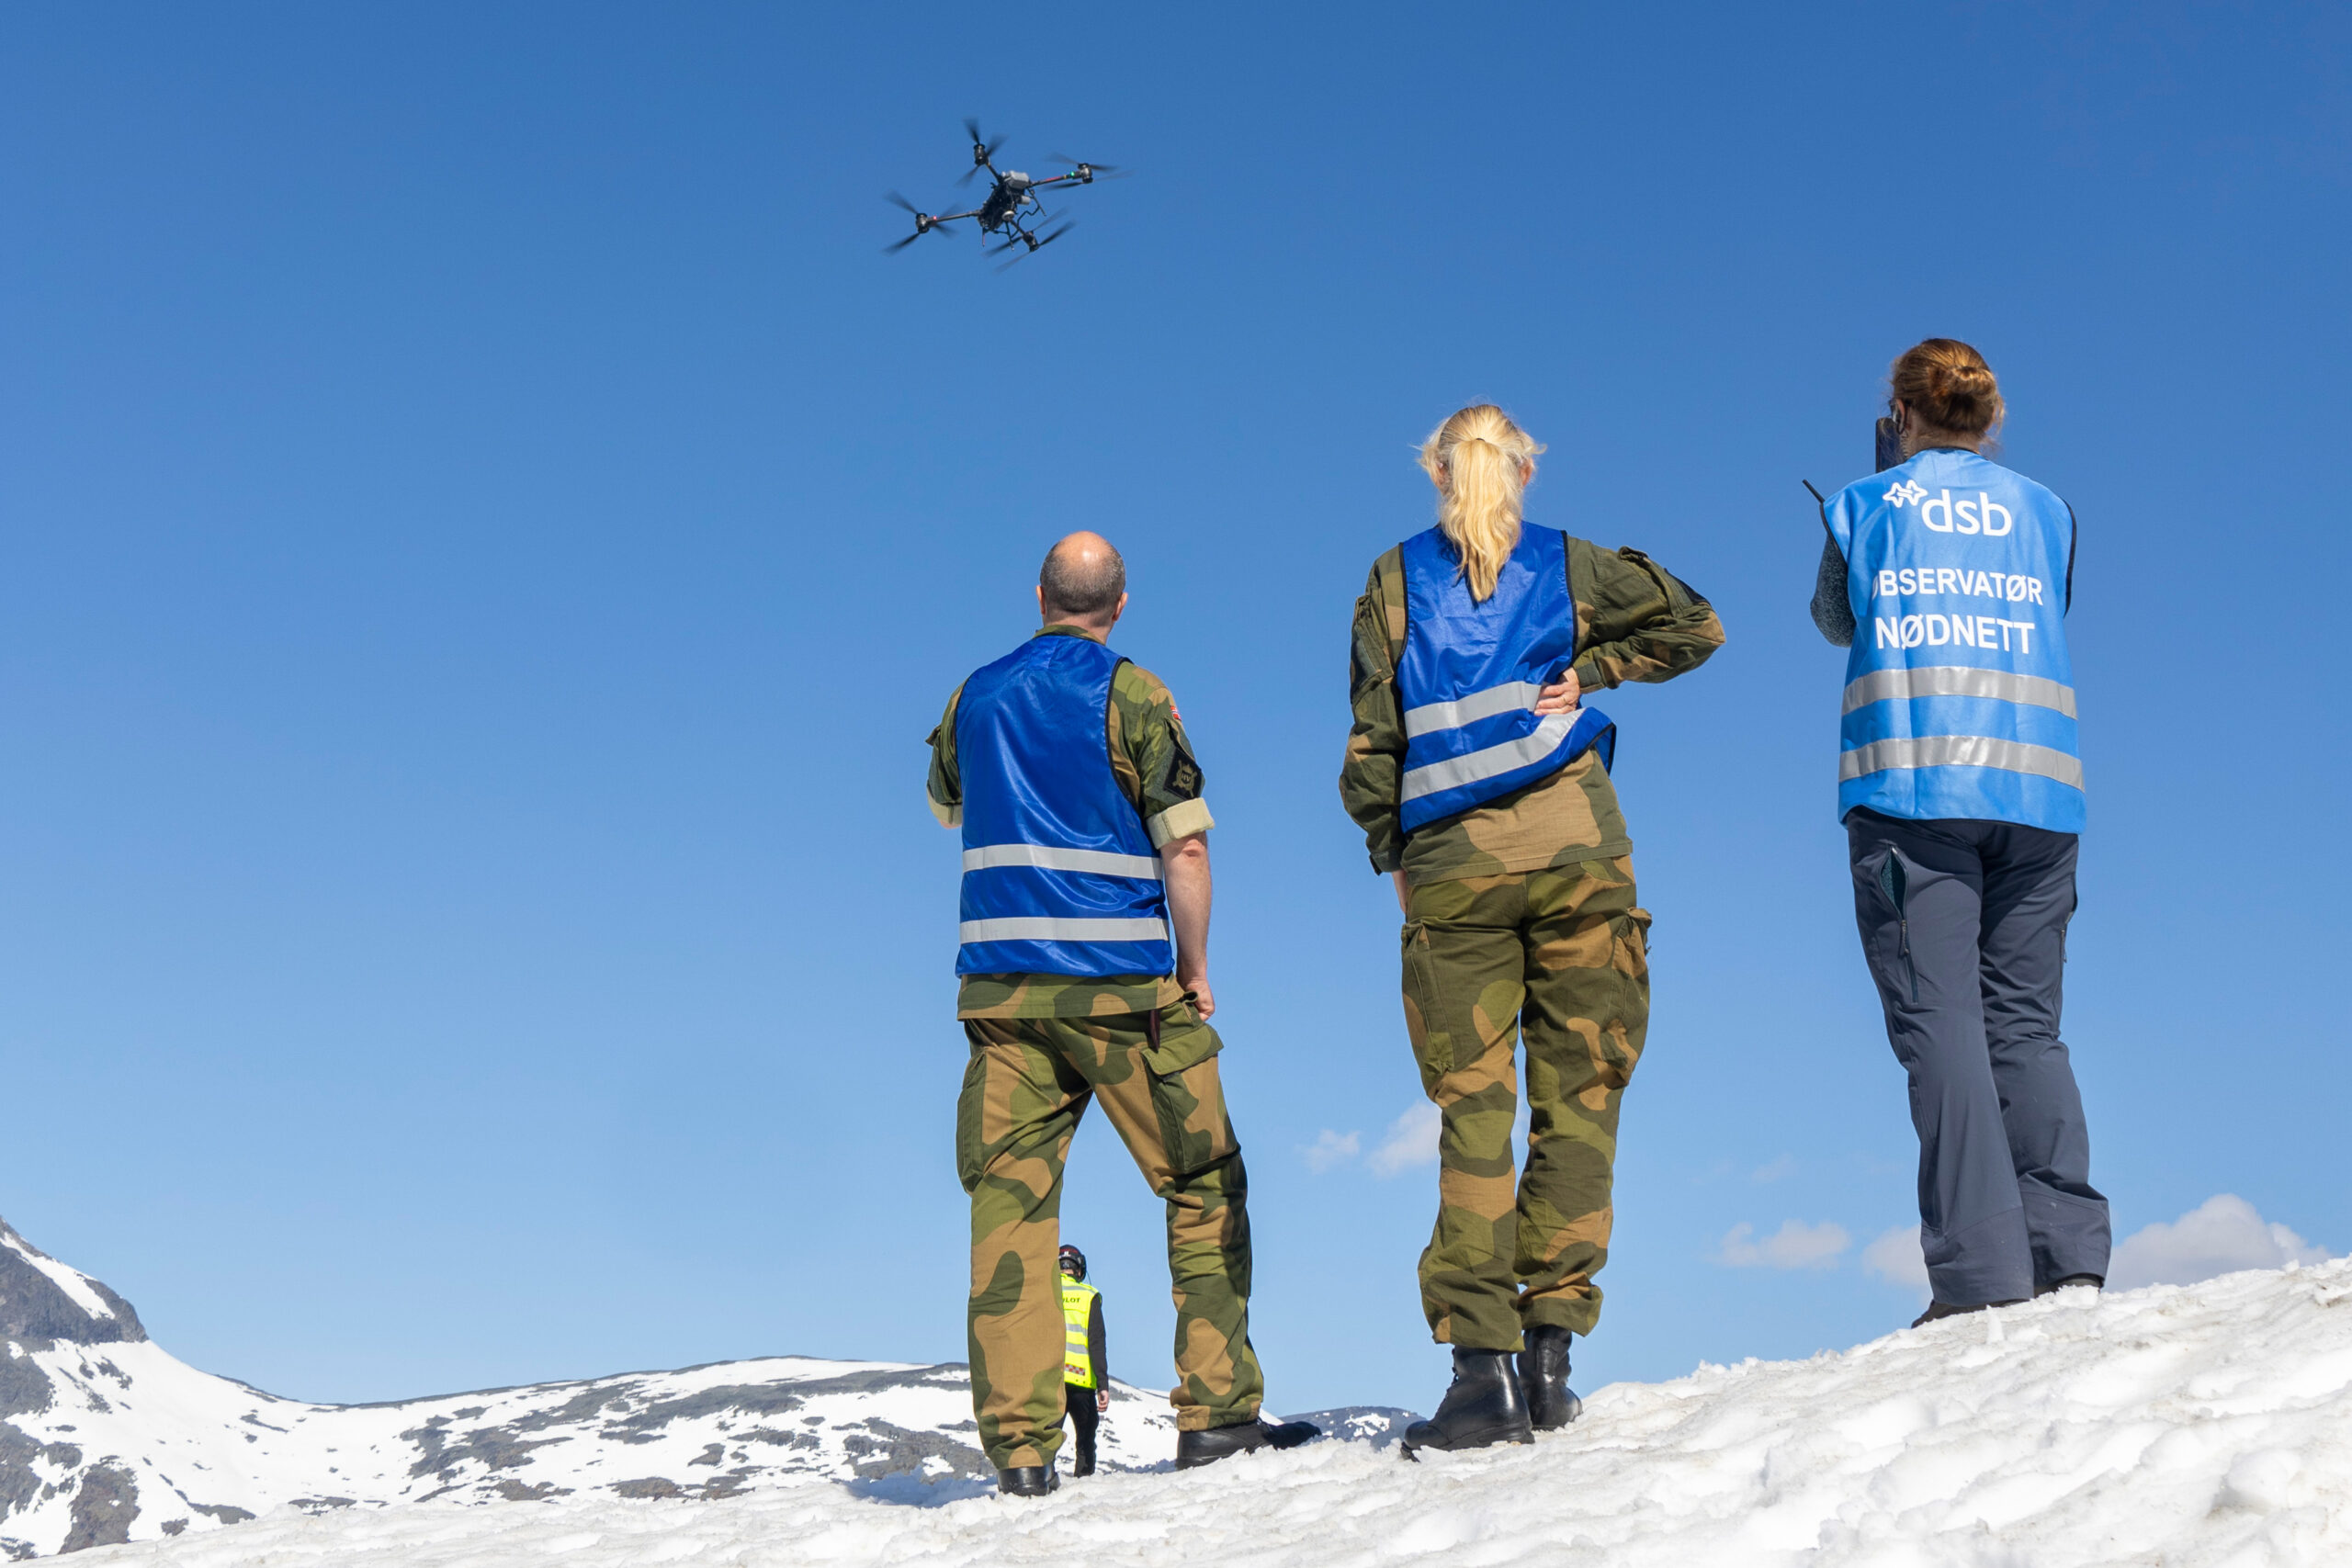 Bilde av tre personer i snølandskap. En drone flyr i lufta.